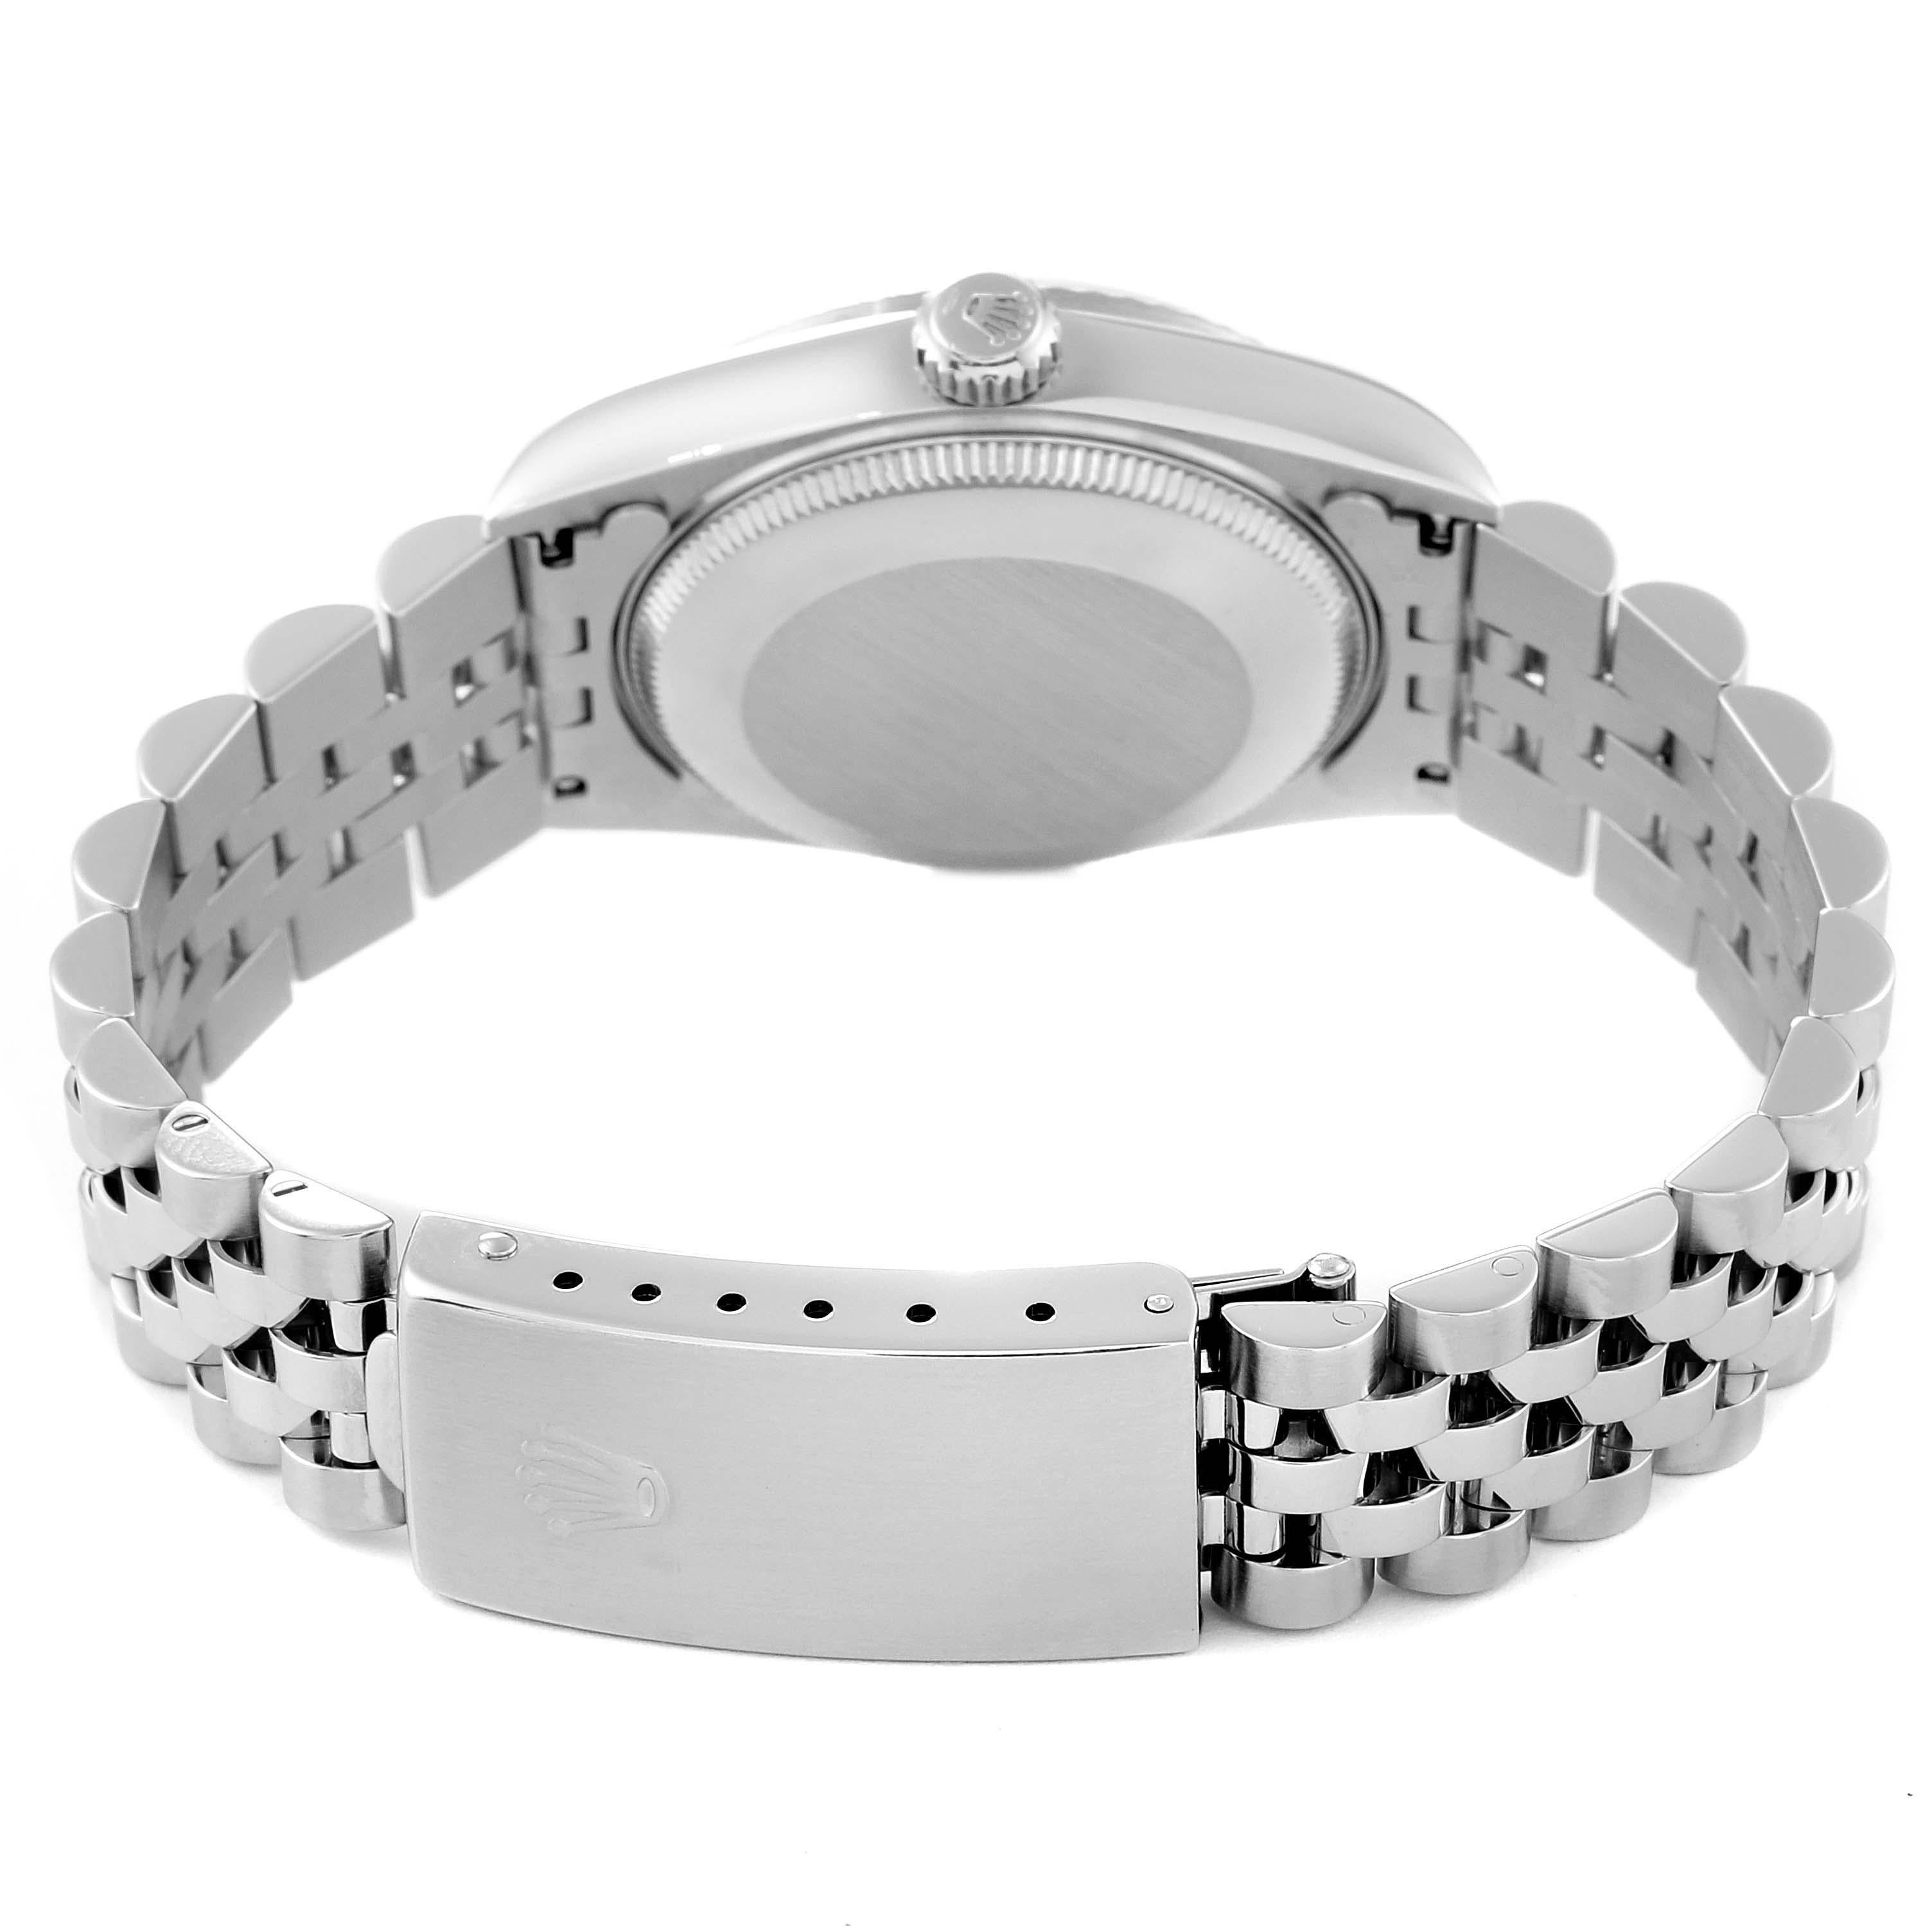 Rolex Datejust Midsize Steel White Gold Diamond Dial Ladies Watch 68274. Mouvement automatique à remontage automatique, officiellement certifié chronomètre. Boîtier oyster en acier inoxydable de 31.0 mm de diamètre. Logo Rolex sur la couronne.